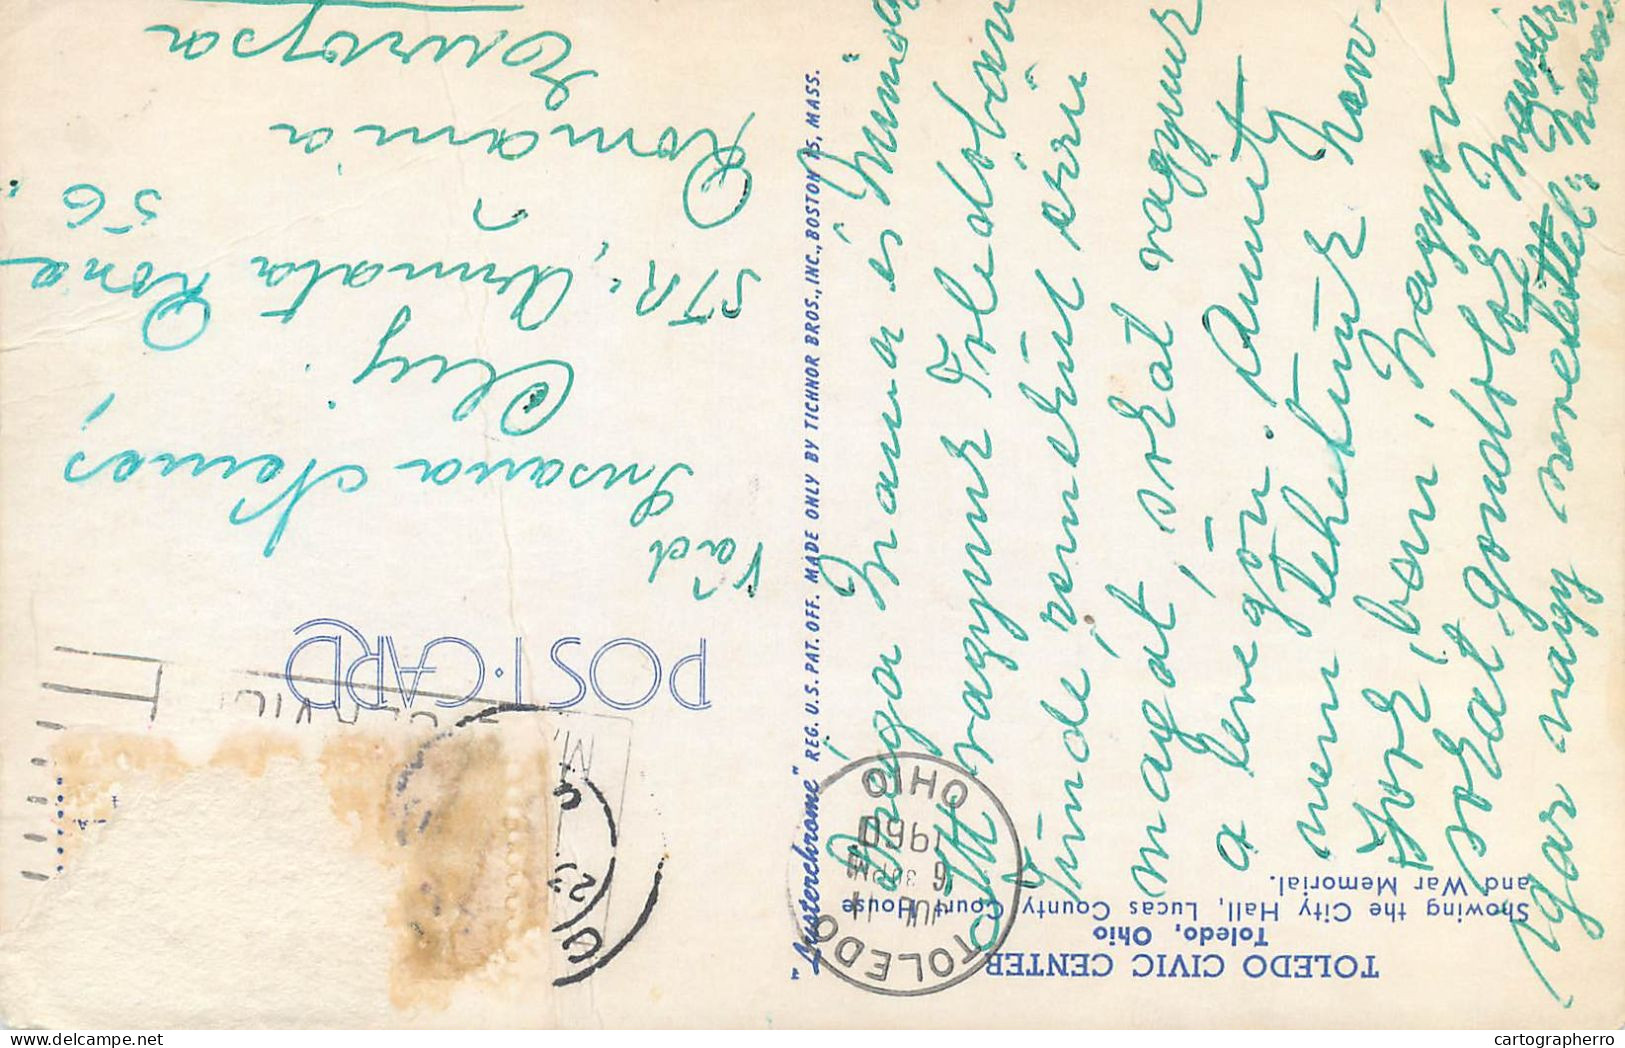 Postcard United States > OH - Ohio > Toledo Civic Center 1960 - Toledo